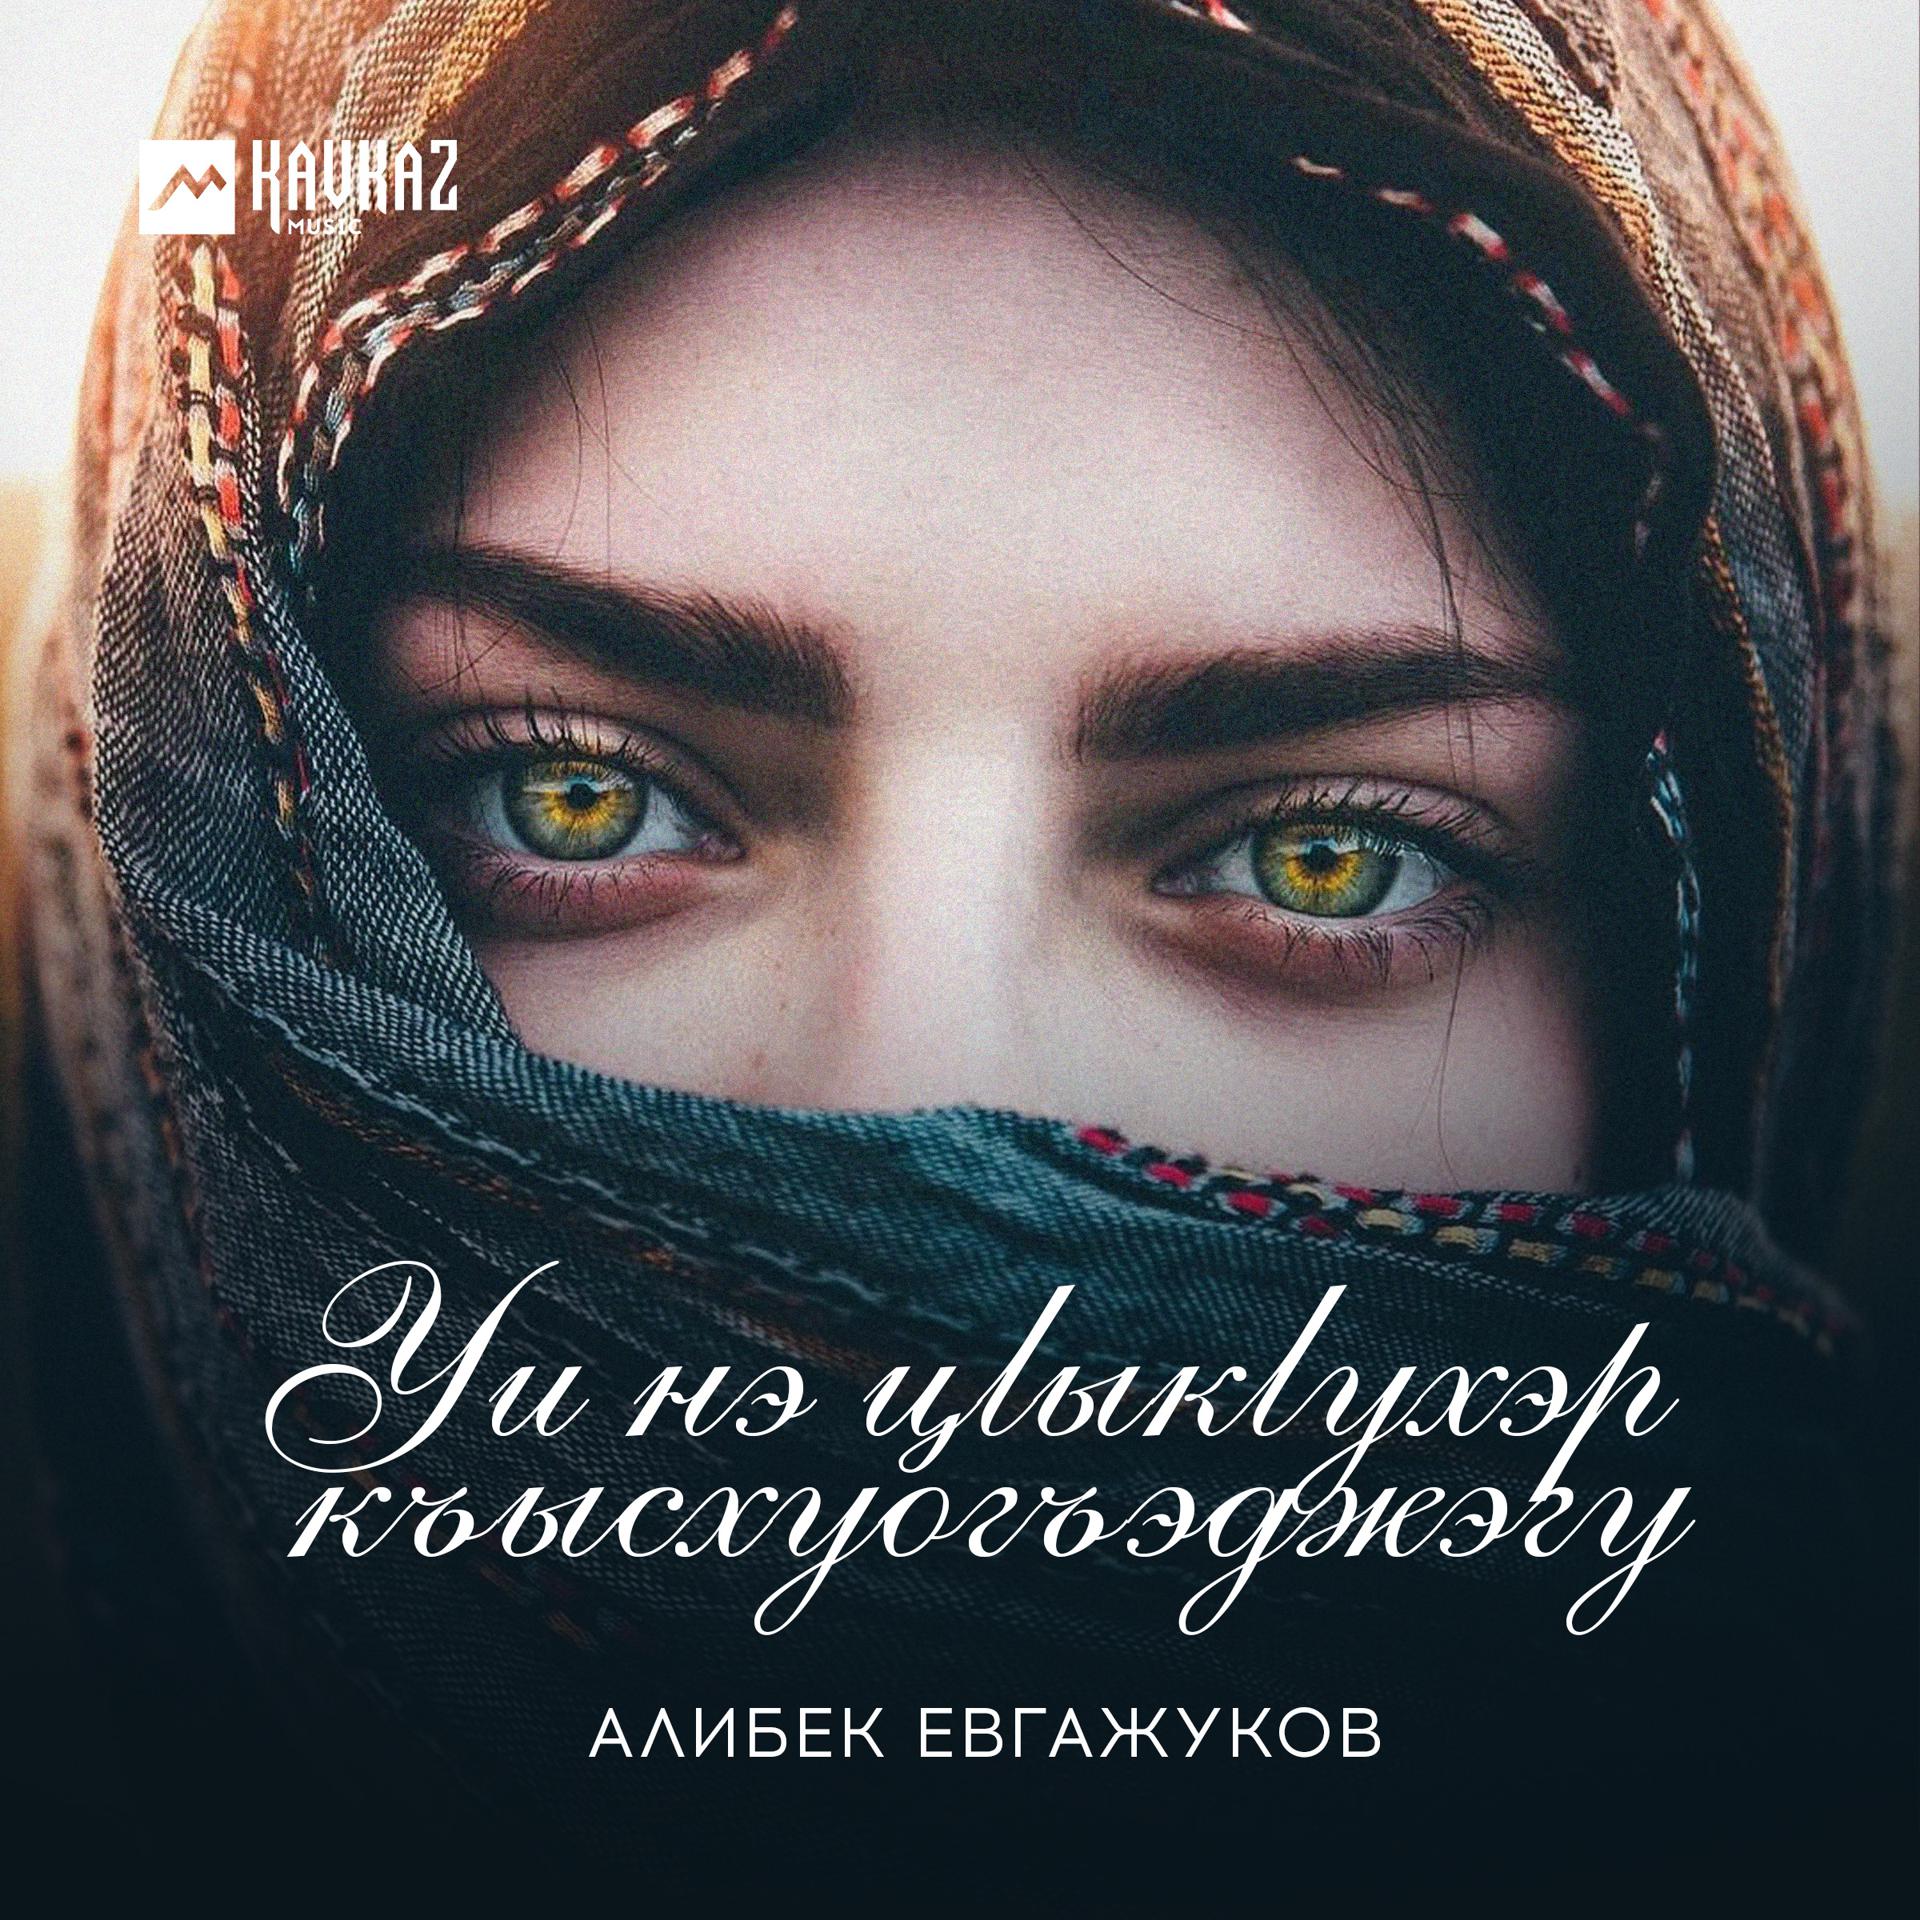 Постер к треку Алибек Евгажуков - Уи нэ цlыкlухэр къысхуогъэджэгу